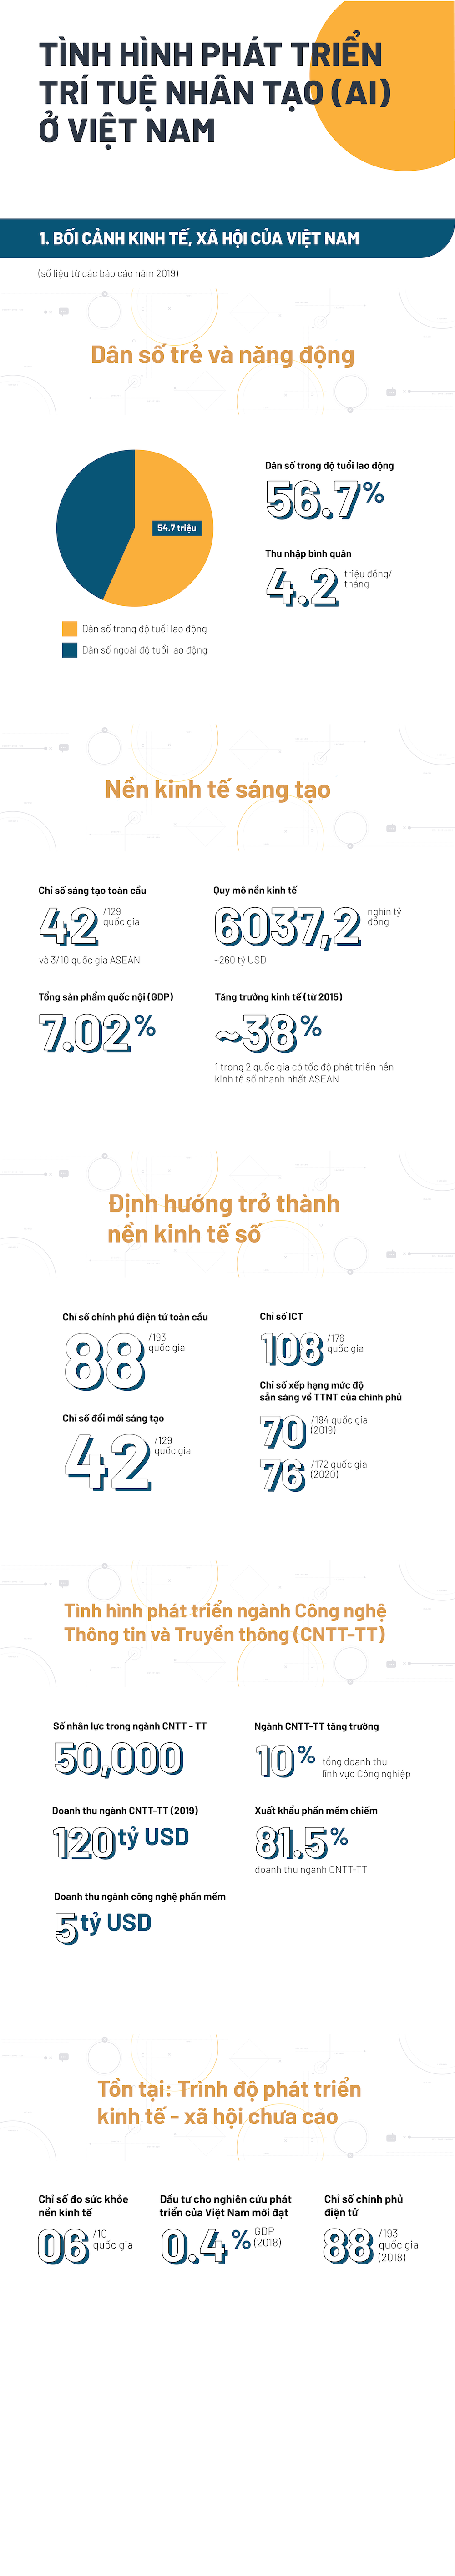 [Infographic] Toàn cảnh sự phát triển của trí tuệ nhân tạo tại Việt Nam - 2